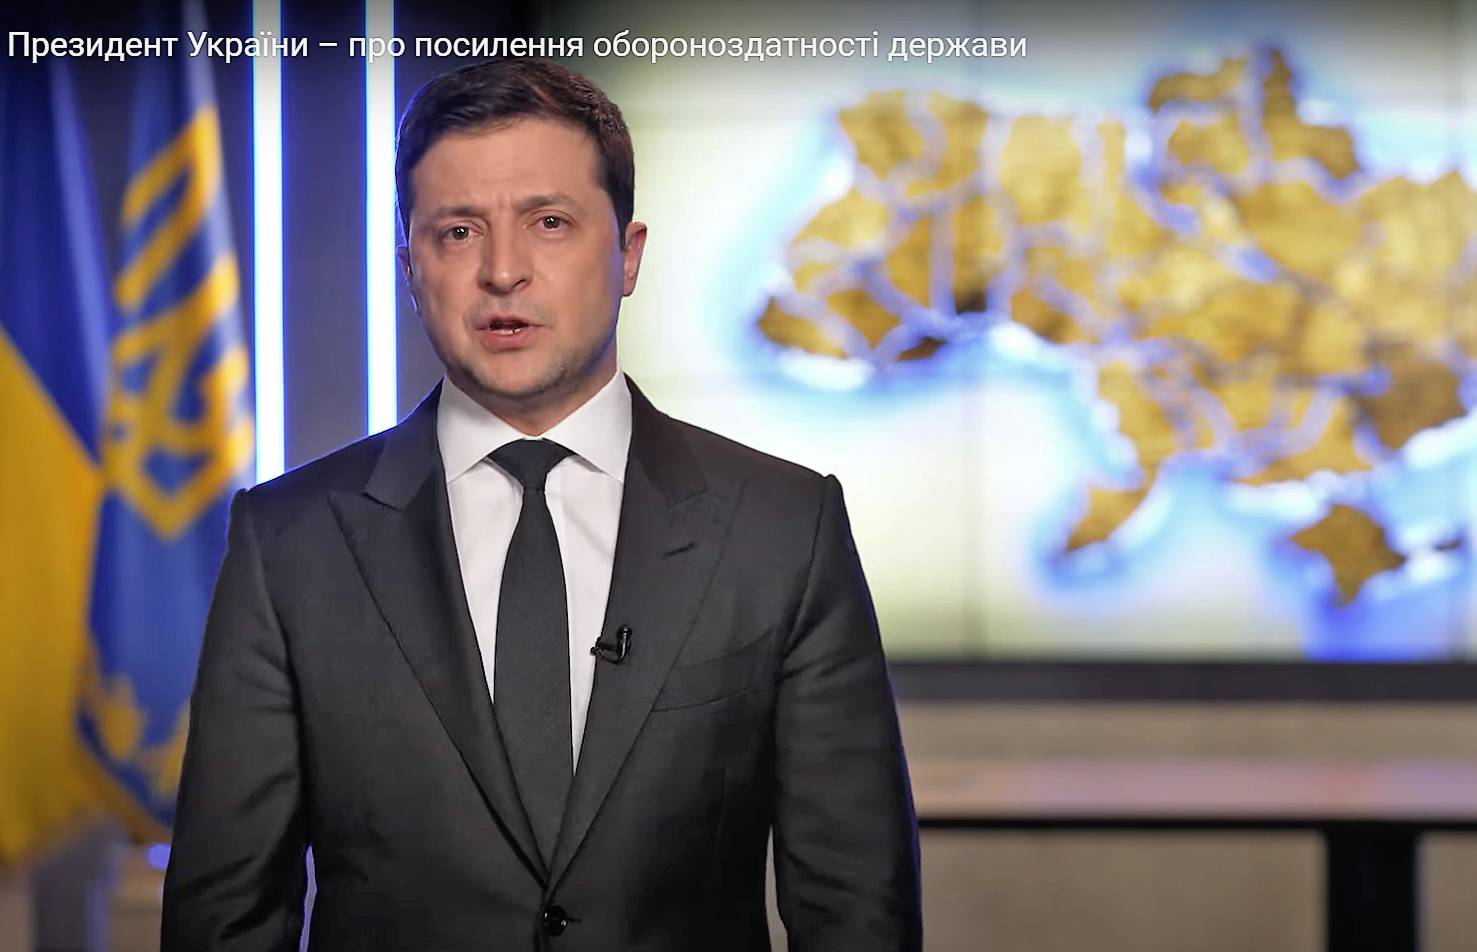 Prezydent Zełenski wygłasza orędziem na tle wielkiej mapy Ukrainy